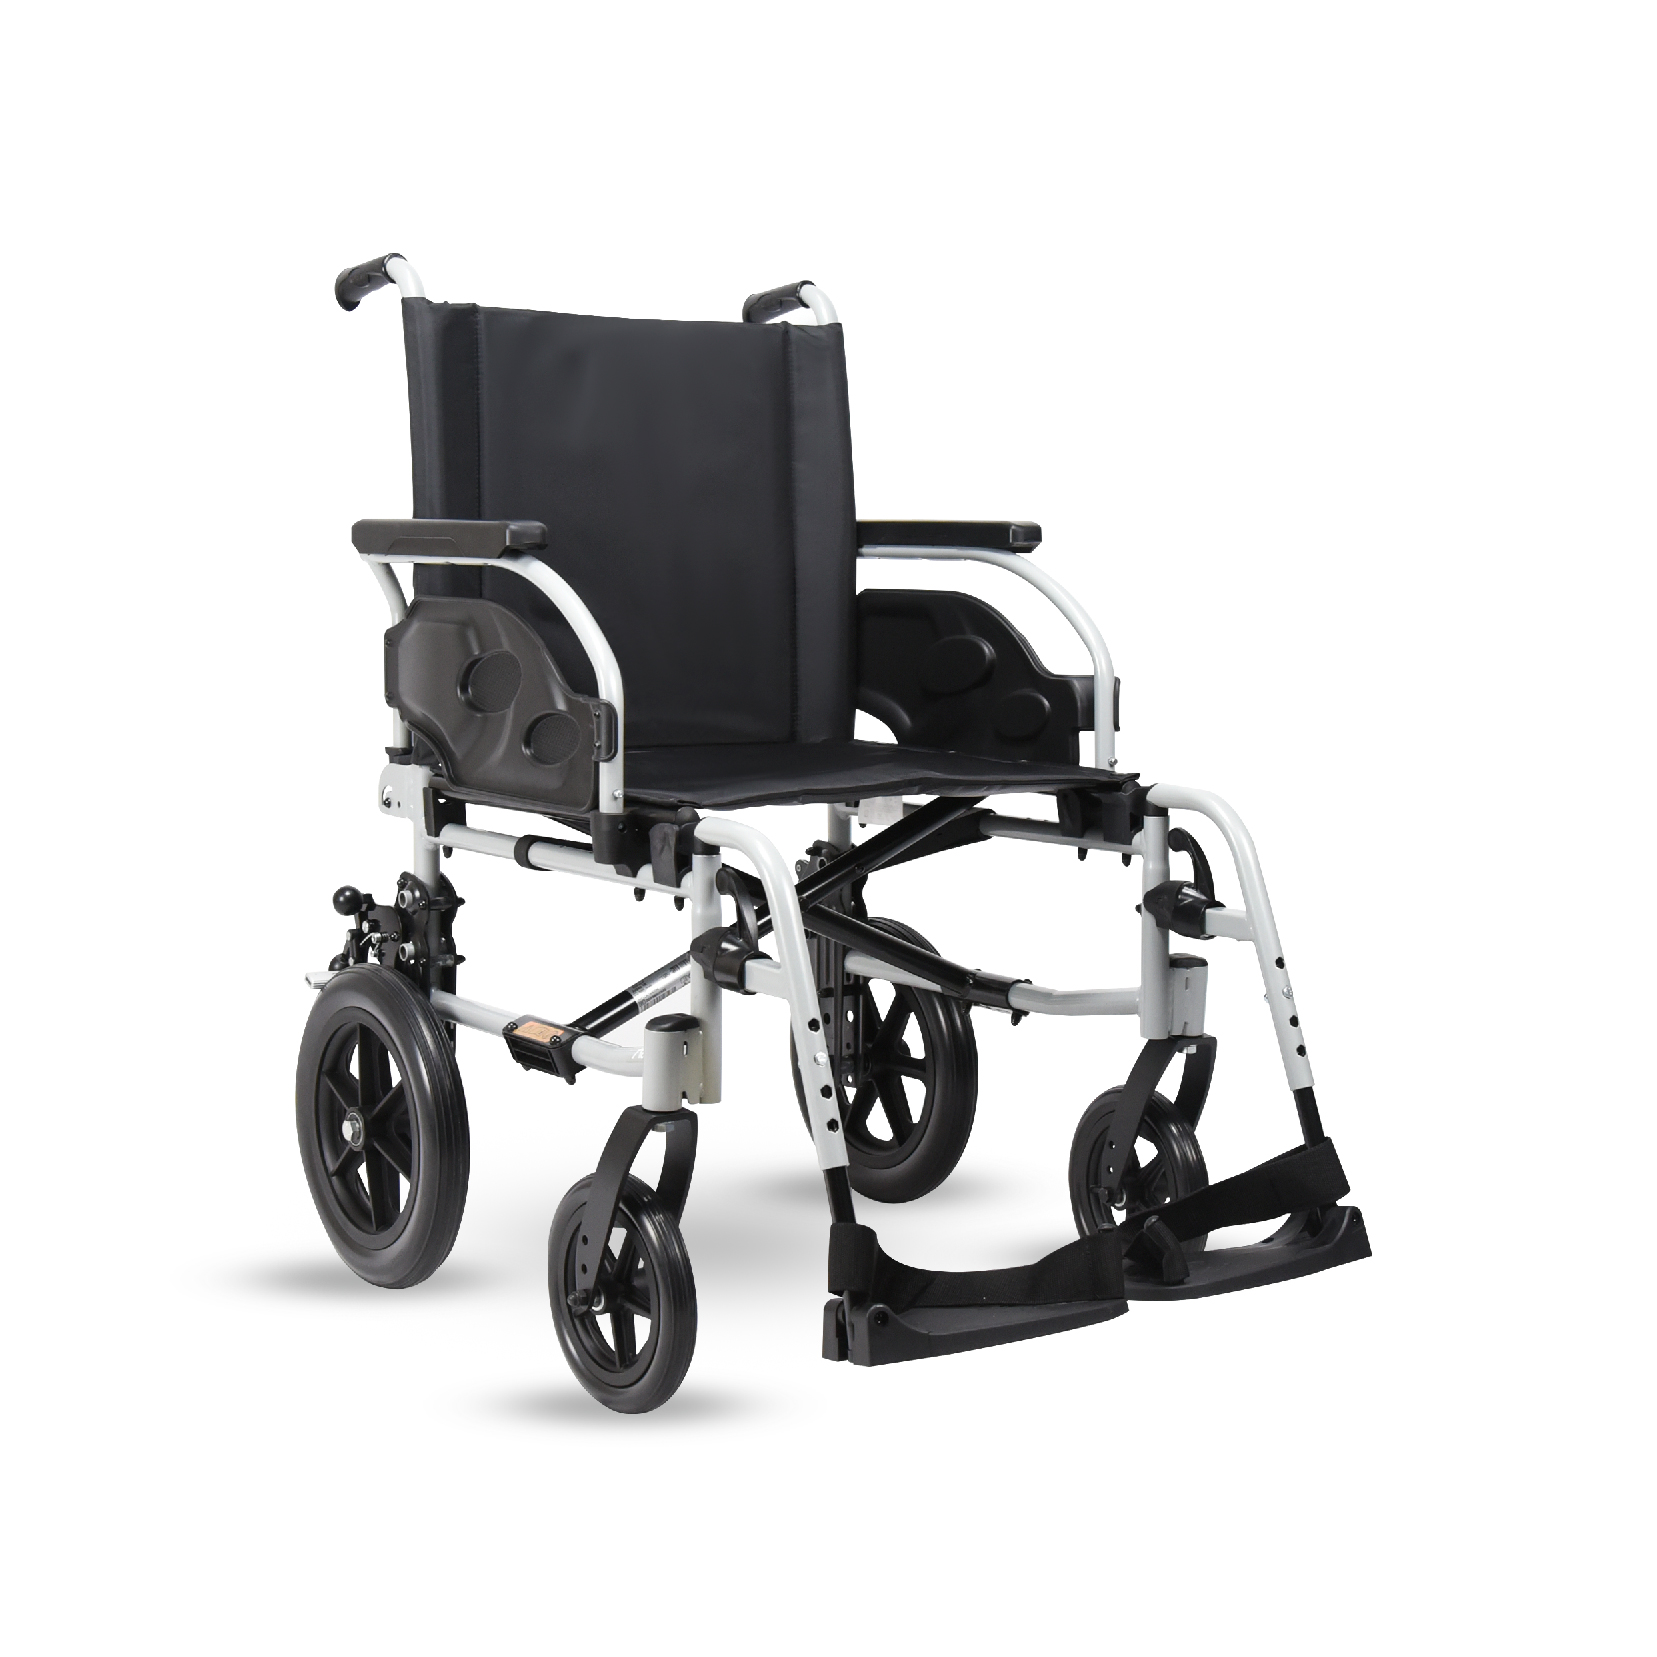 วีลแชร์ผู้สูงอายุ รุ่นเบาะกว้างพิเศษ พับได้ ยี่ห้อ Invacare รุ่น Action 1R (Extra-wide Manual Wheelchair) รับประกัน 2 ปี